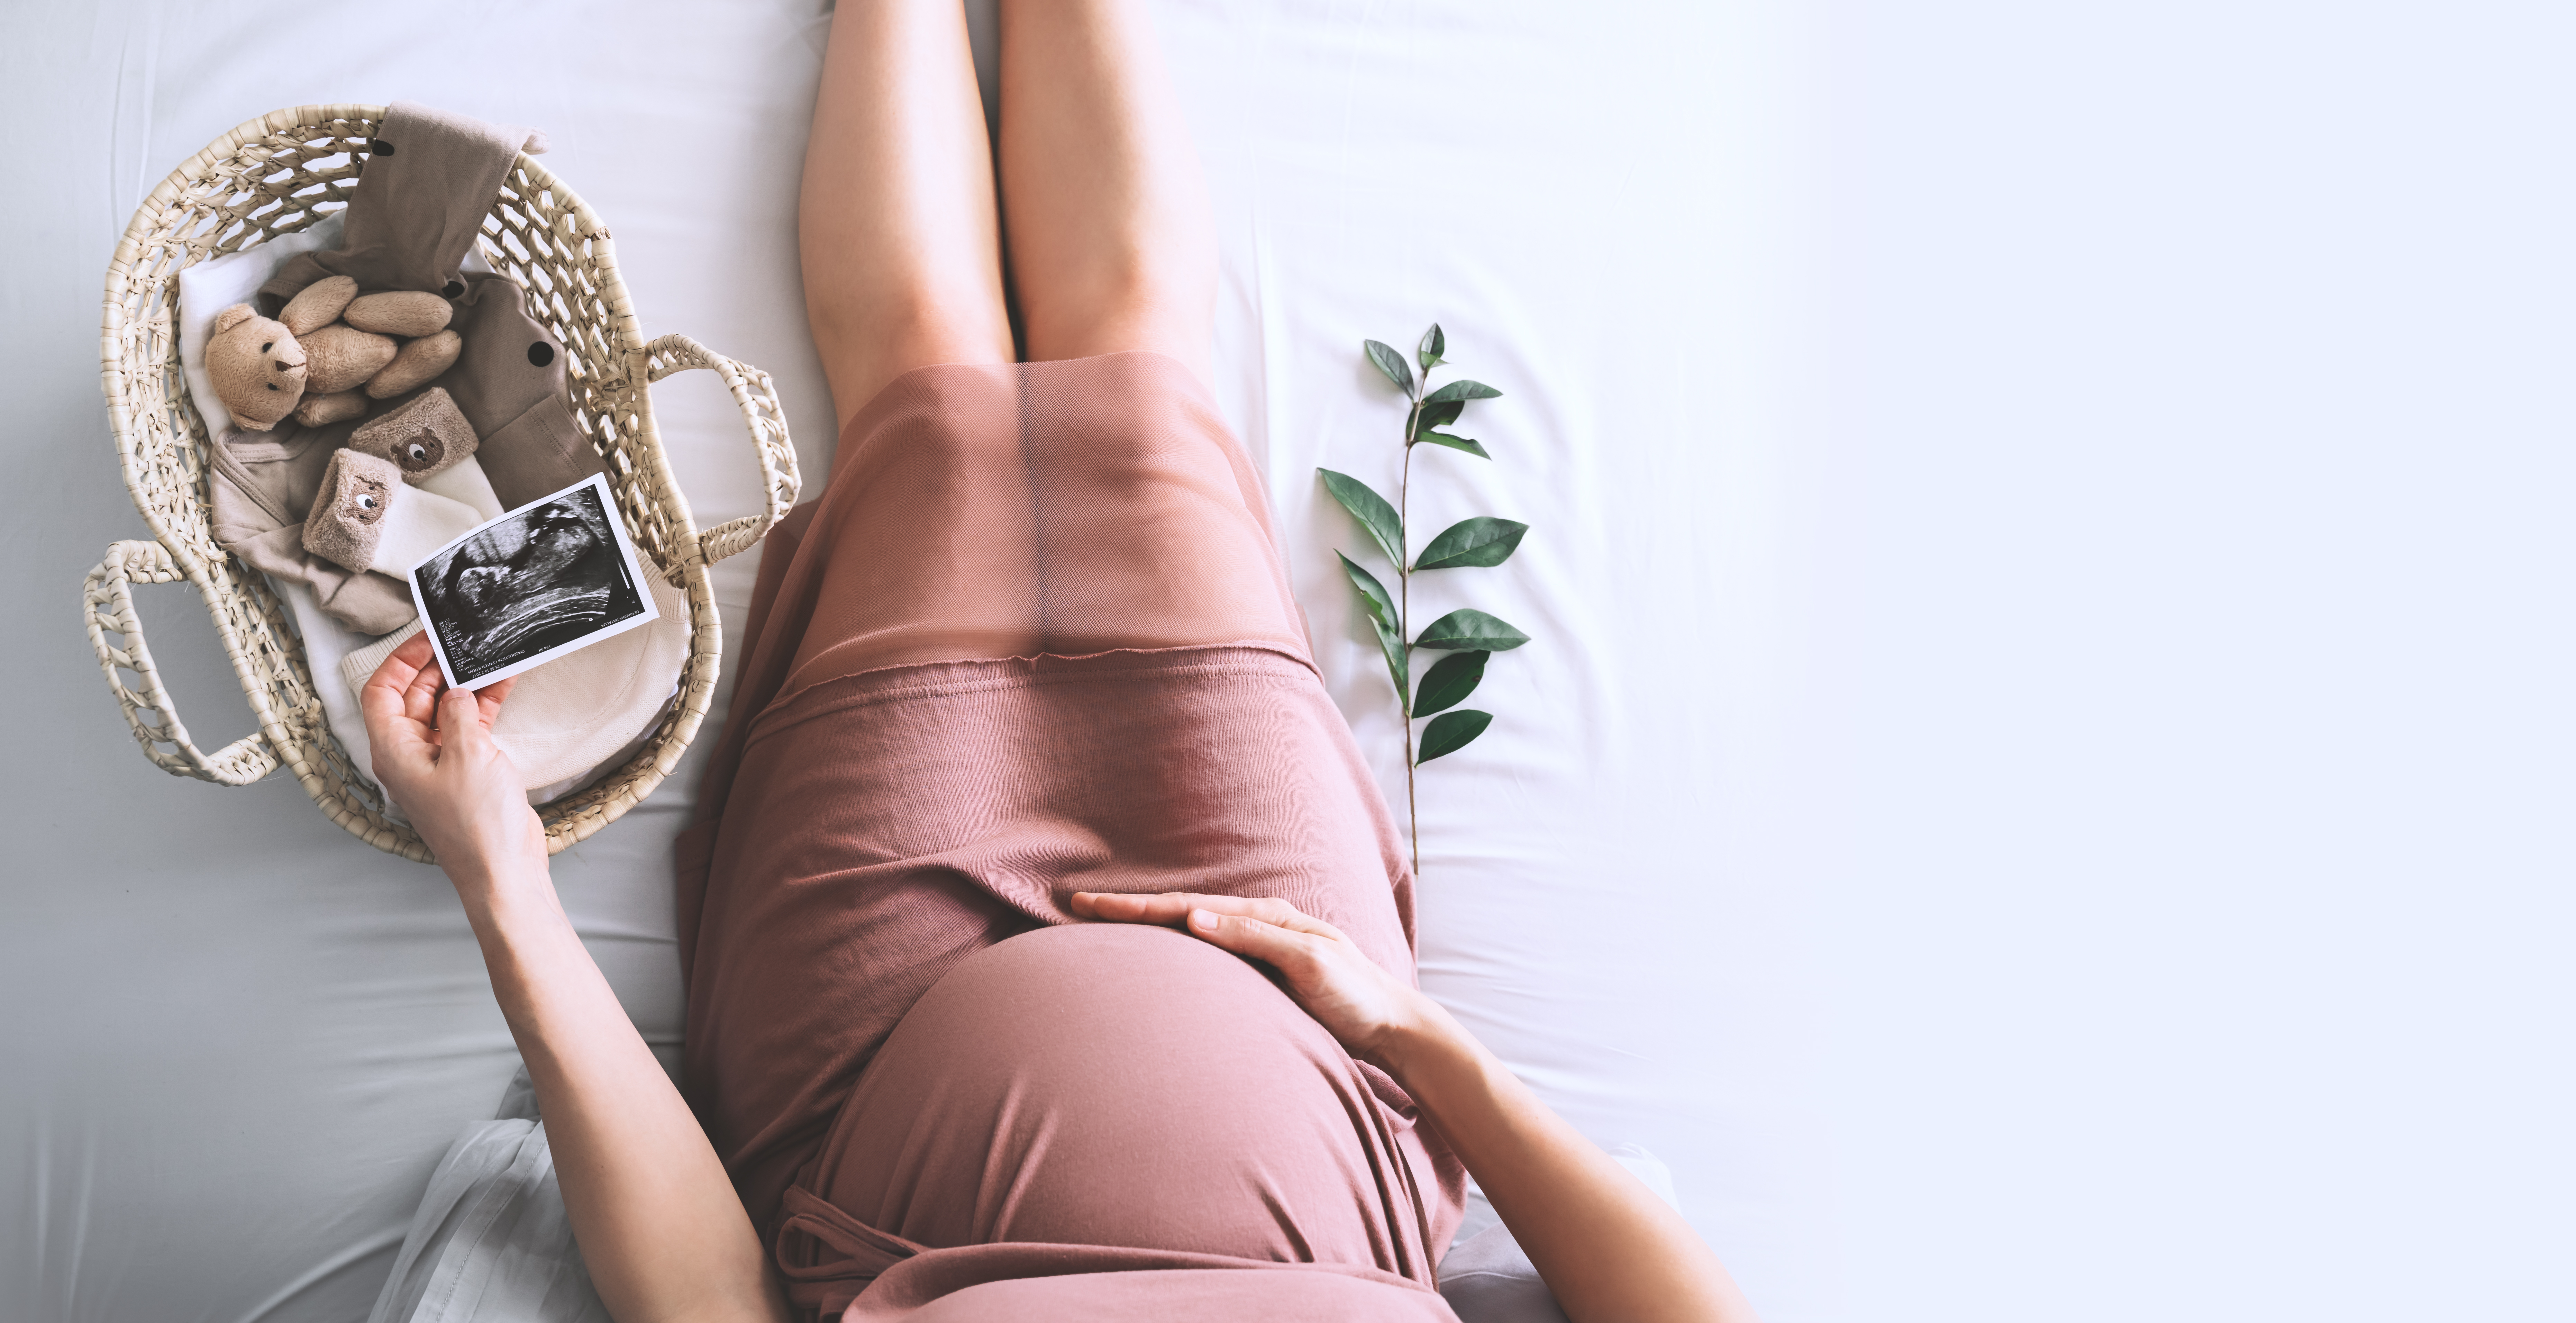 Femme enceinte assise avec un couffin et des articles pour bébé | Source : Shutterstock